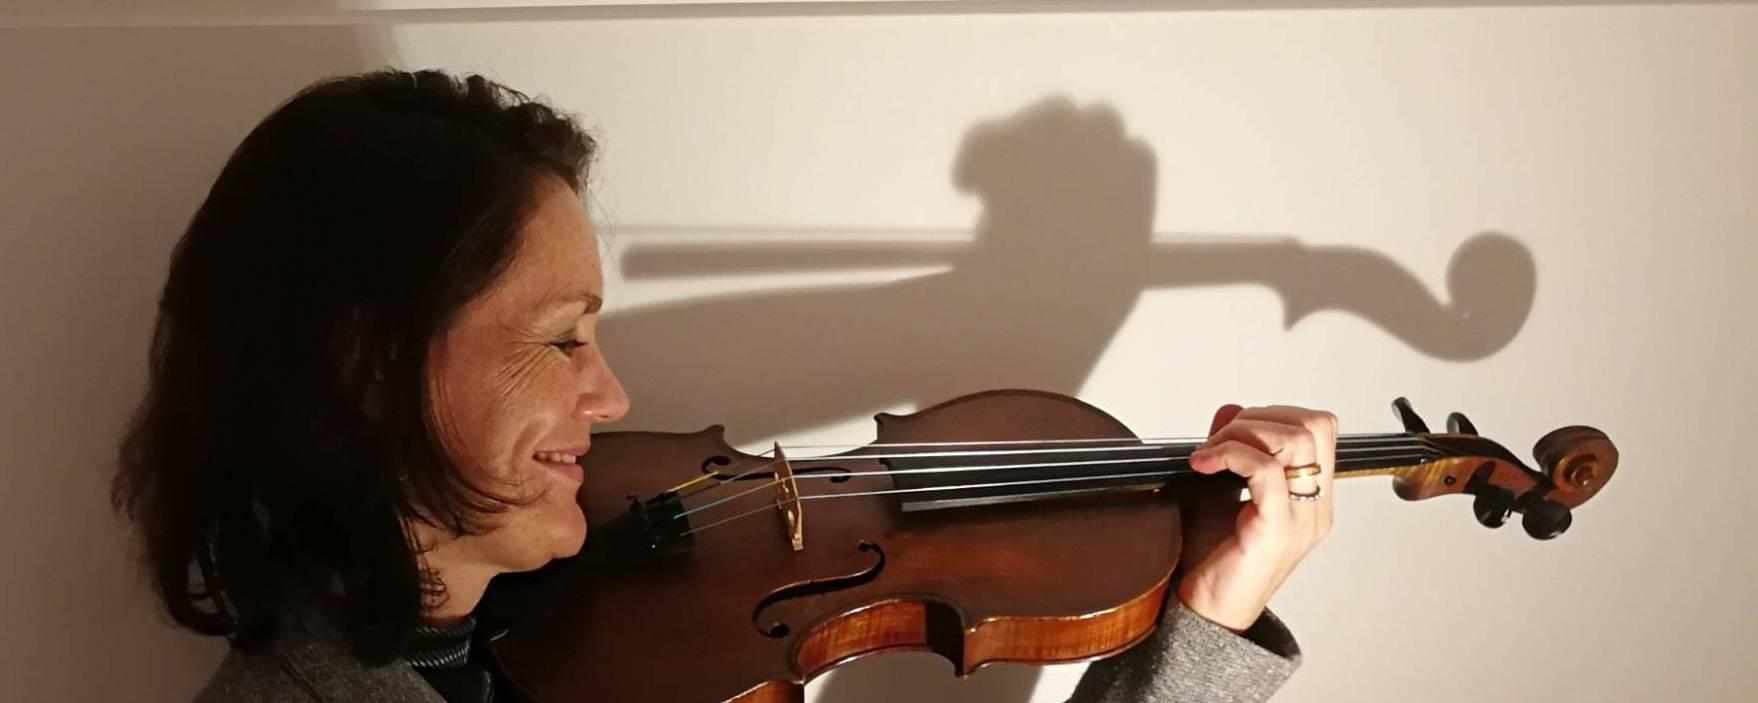 Violin-/Violaunterricht oder Kammermusik